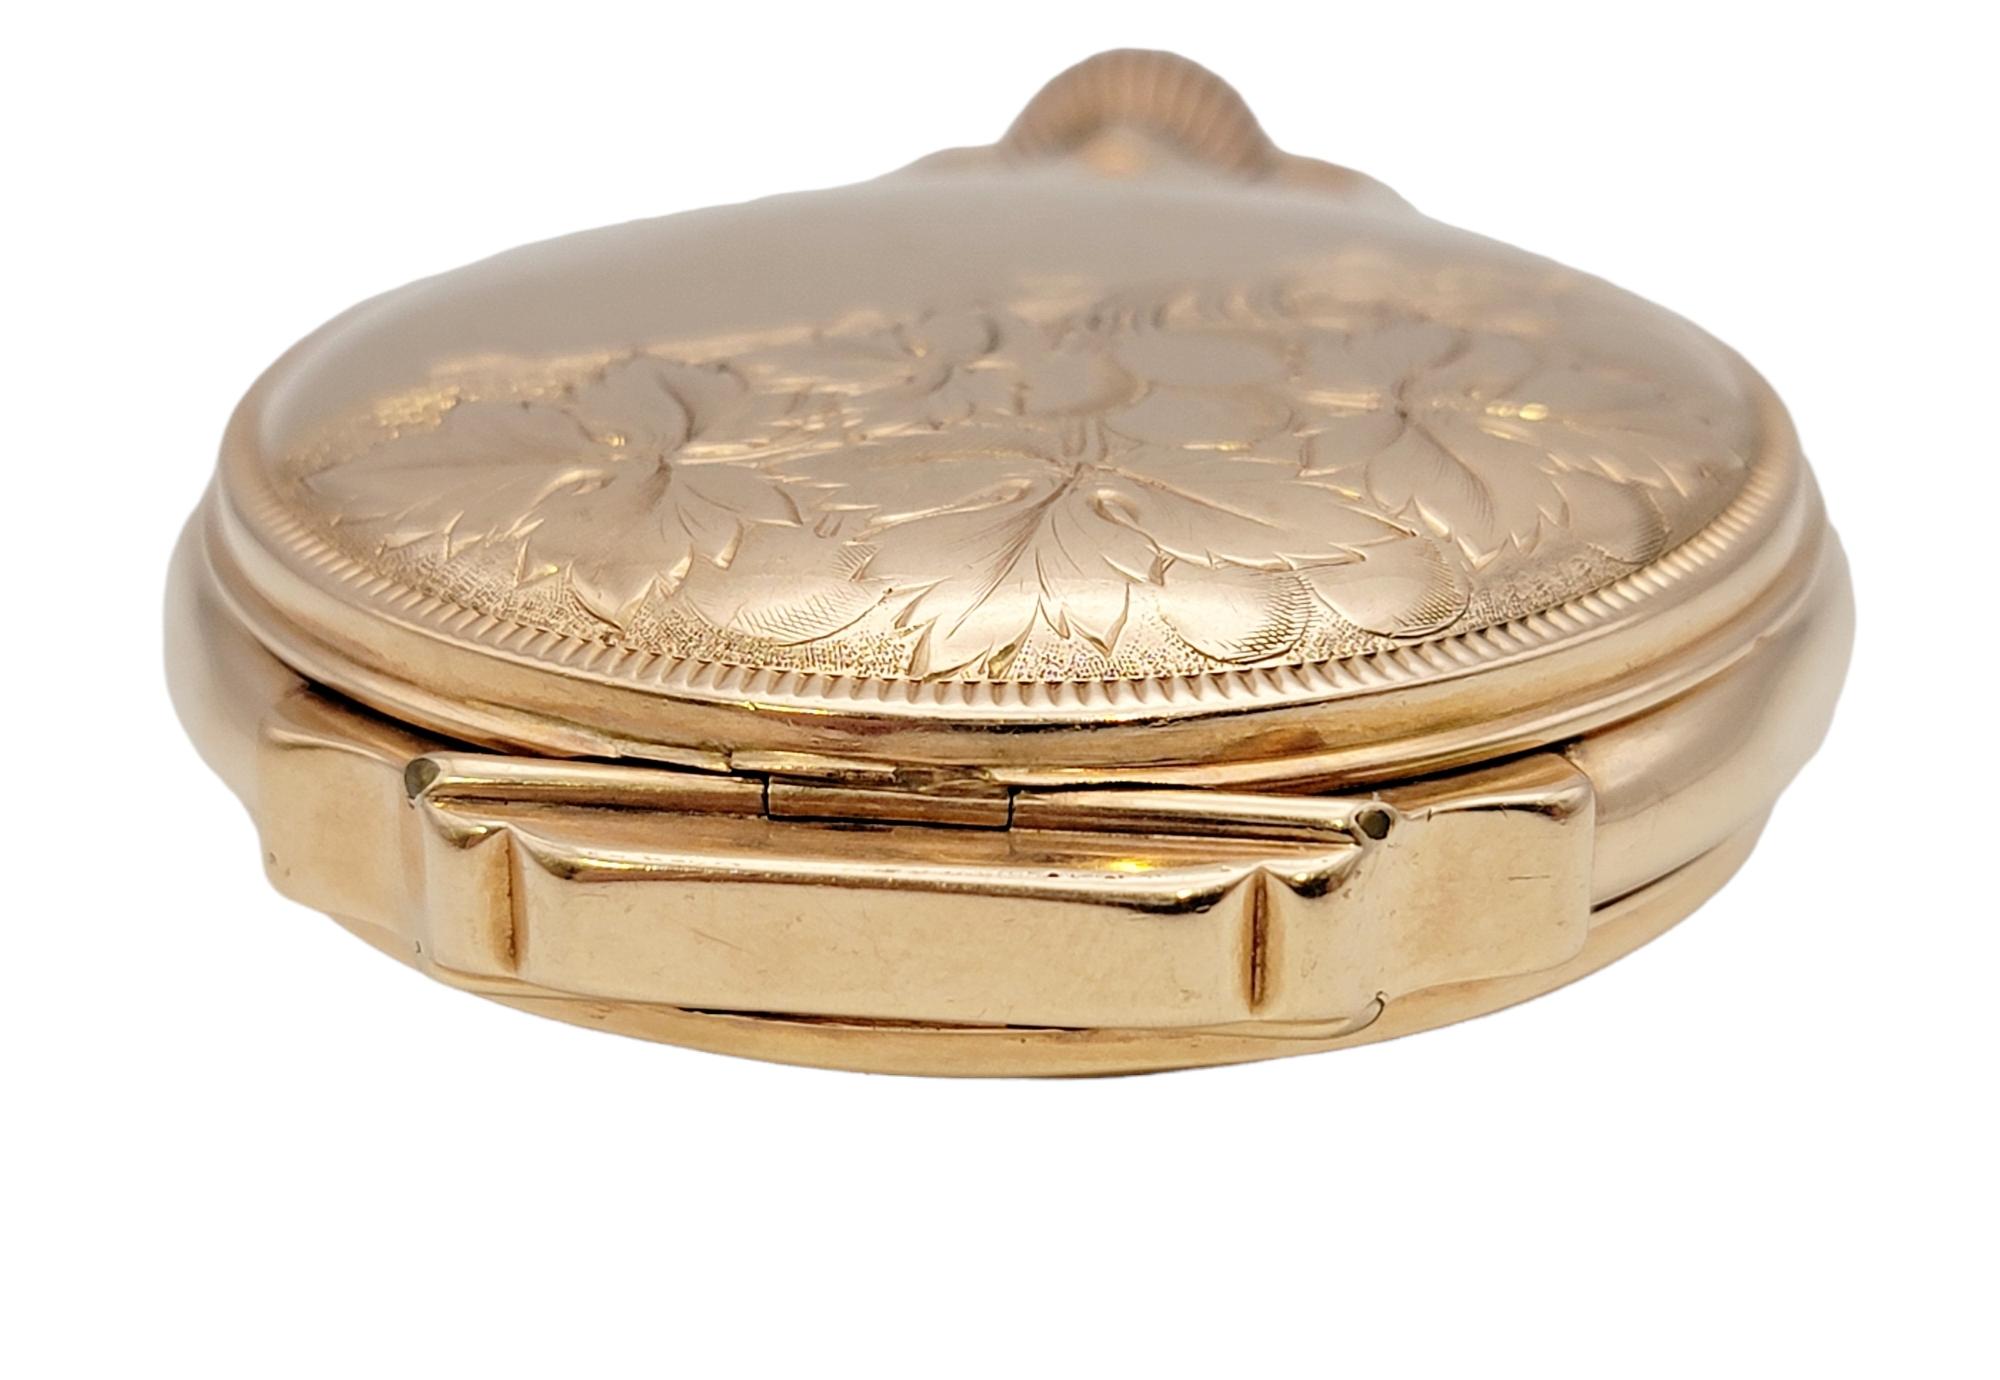 waltham gold pocket watch